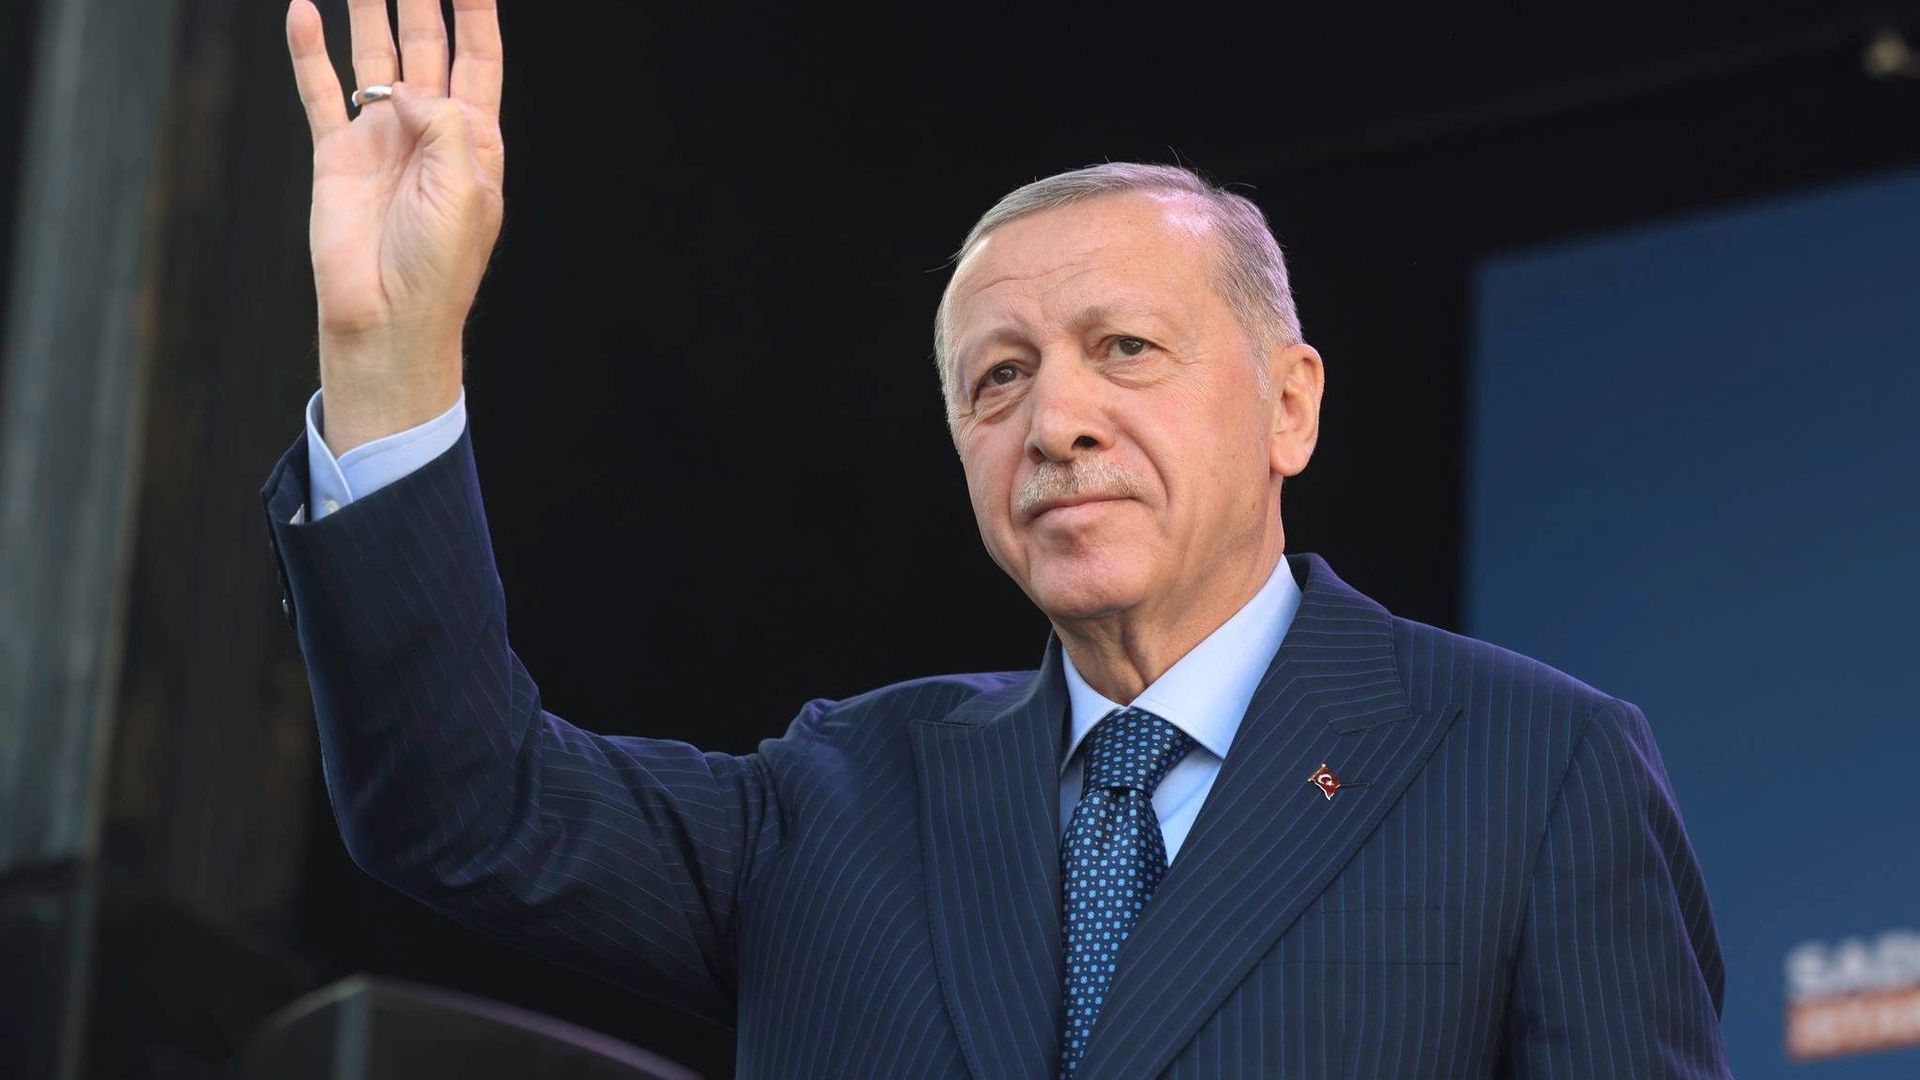 frank-walter steinmeier bei recep tayyip erdoğan: da ist eine türkei jenseits seiner macht